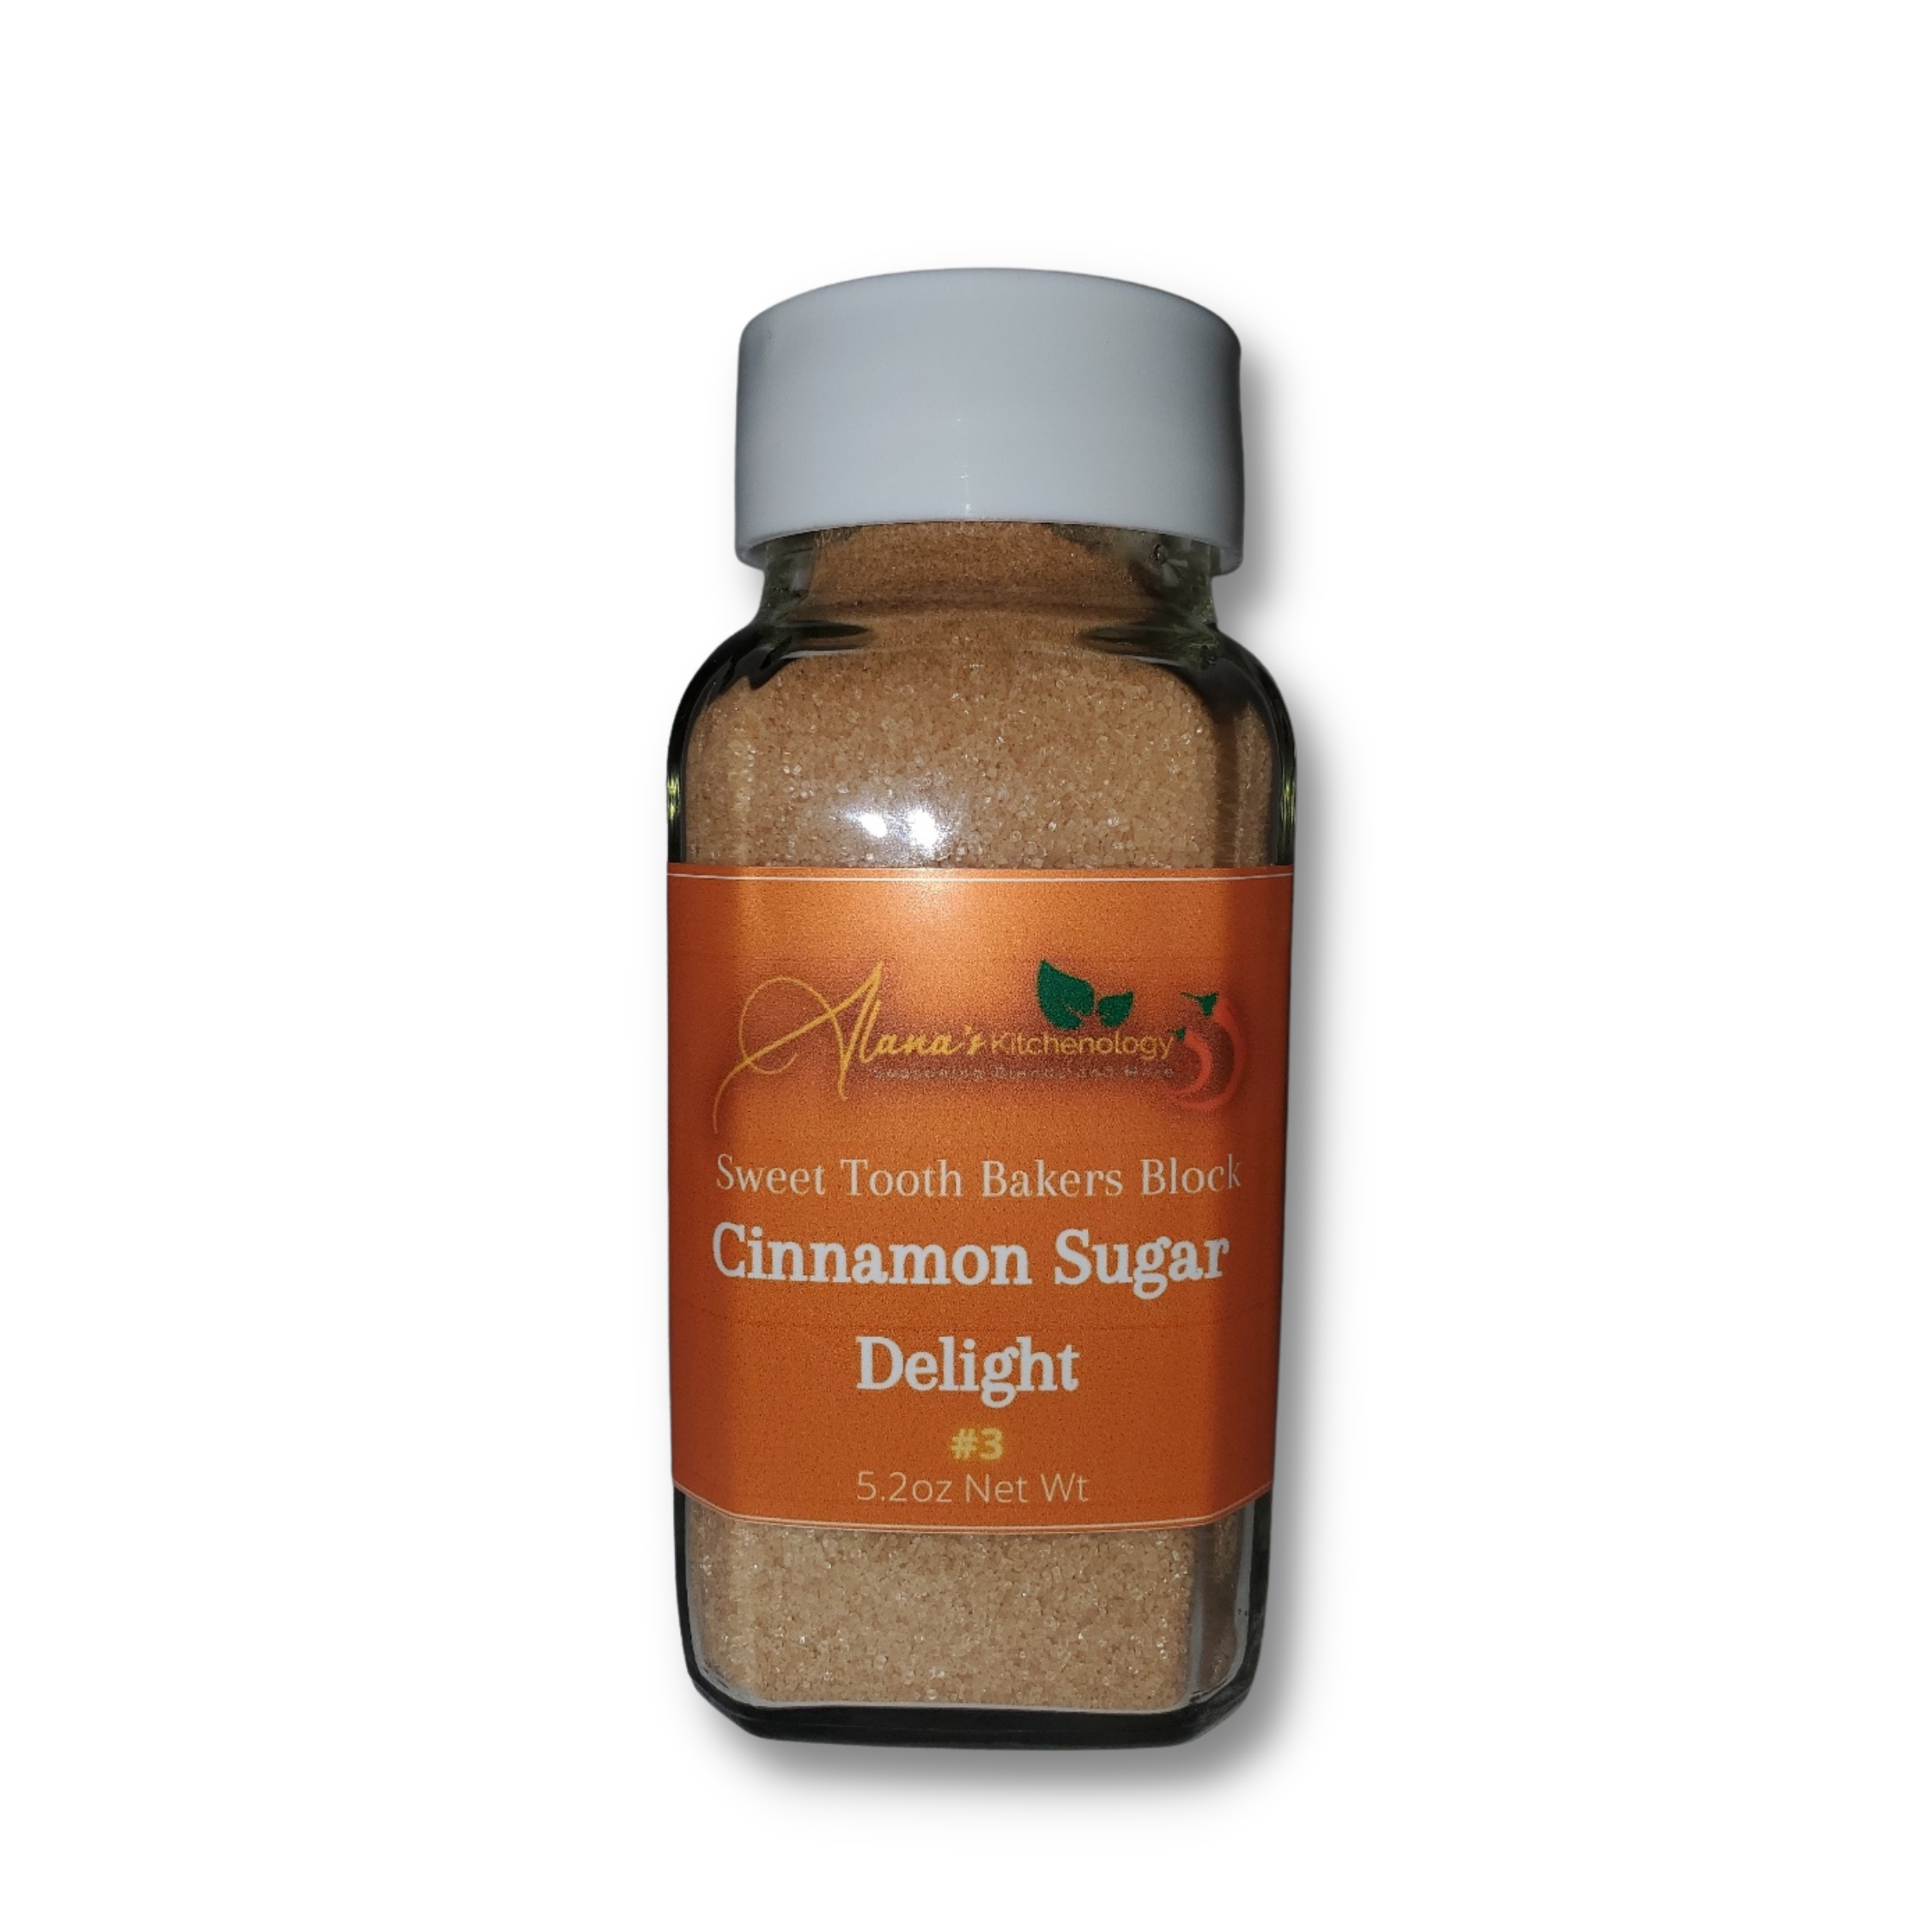 Cinnamon Sugar Delight #3